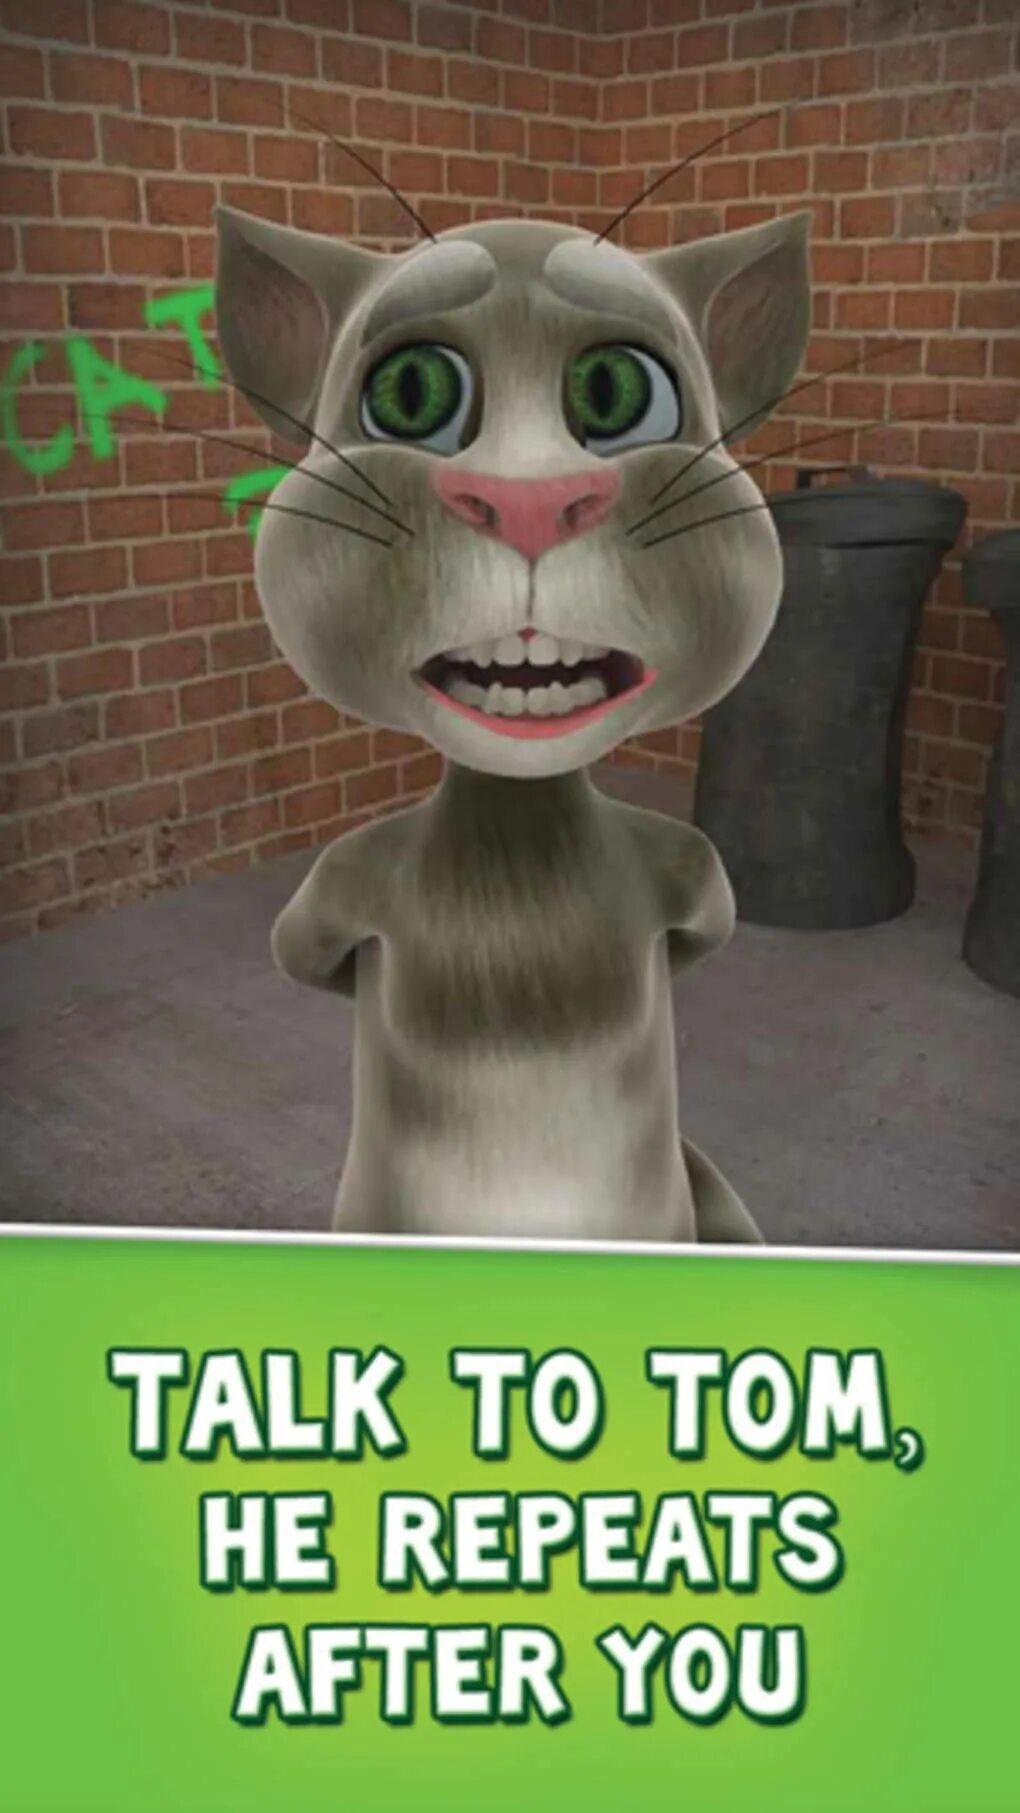 Tom 2010. Talking Tom игра 2010. Talking Tom Cat. Игра talking Tom Cat (2010) антроил. Игра talking Tom Cat (2010) андроид.